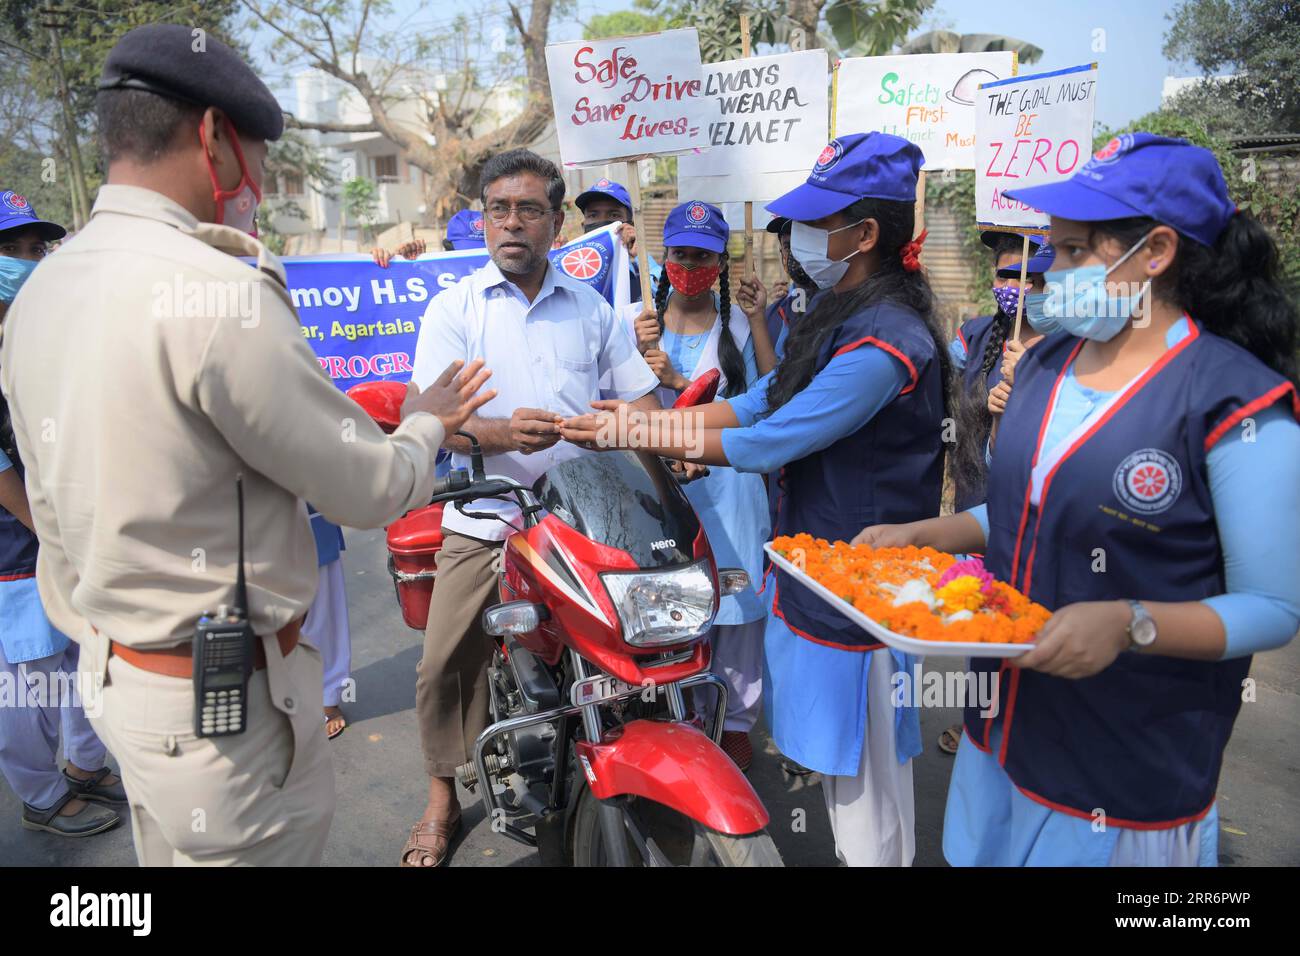 210225 -- AGARTALA, 25 febbraio 2021 -- i volontari danno fiori a un motociclista senza casco nell'ambito di un programma di sensibilizzazione sulla sicurezza stradale e le regole del traffico, alla periferia di Agartala, la capitale dello stato nord-orientale dell'India di Tripura, 25 febbraio 2021. Str/ INDIA-AGARTALA-PROGRAMMA DI SICUREZZA STRADALE Xinhua PUBLICATIONxNOTxINxCHN Foto Stock